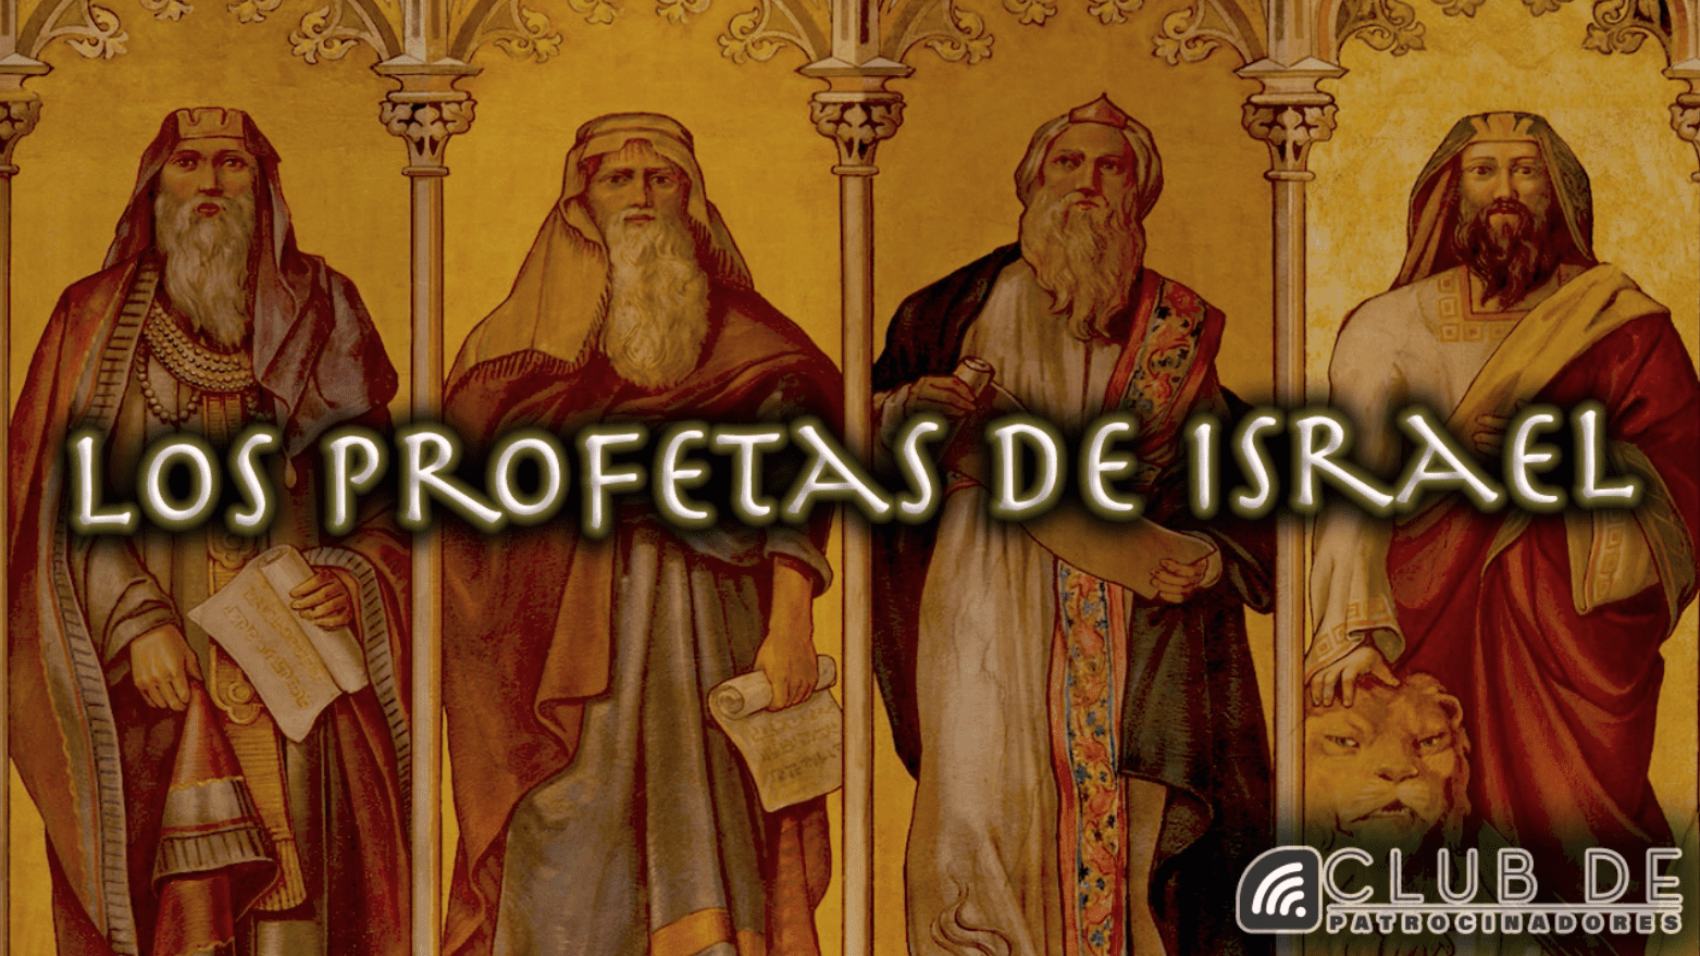 Los profetas de Israel